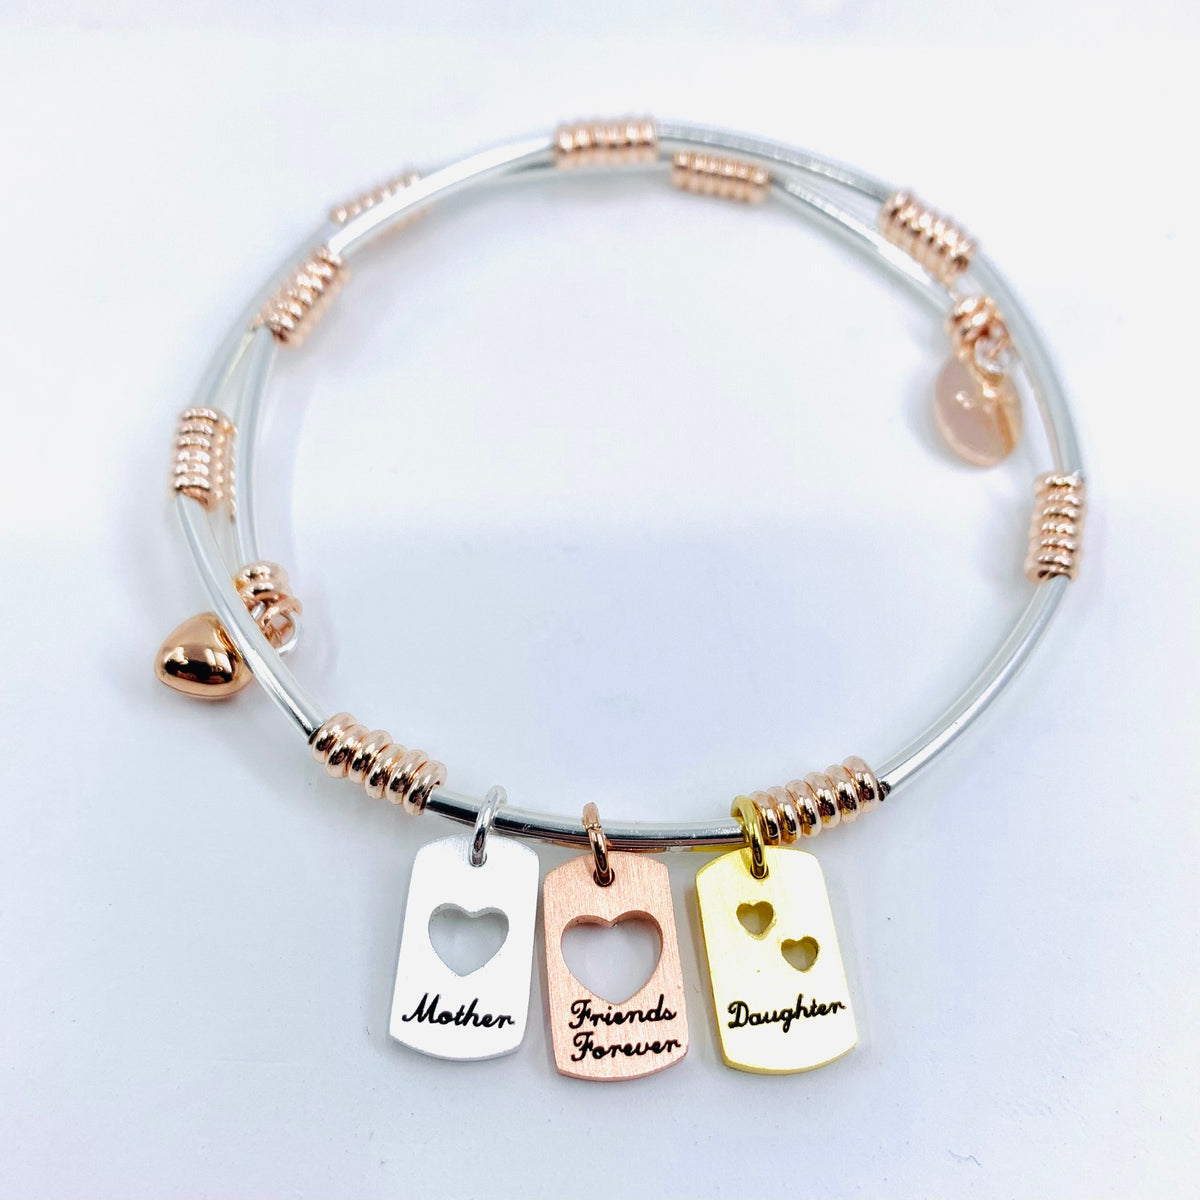 Mother &amp; Daughter Bracelets Jewelry Lauren-Spencer 